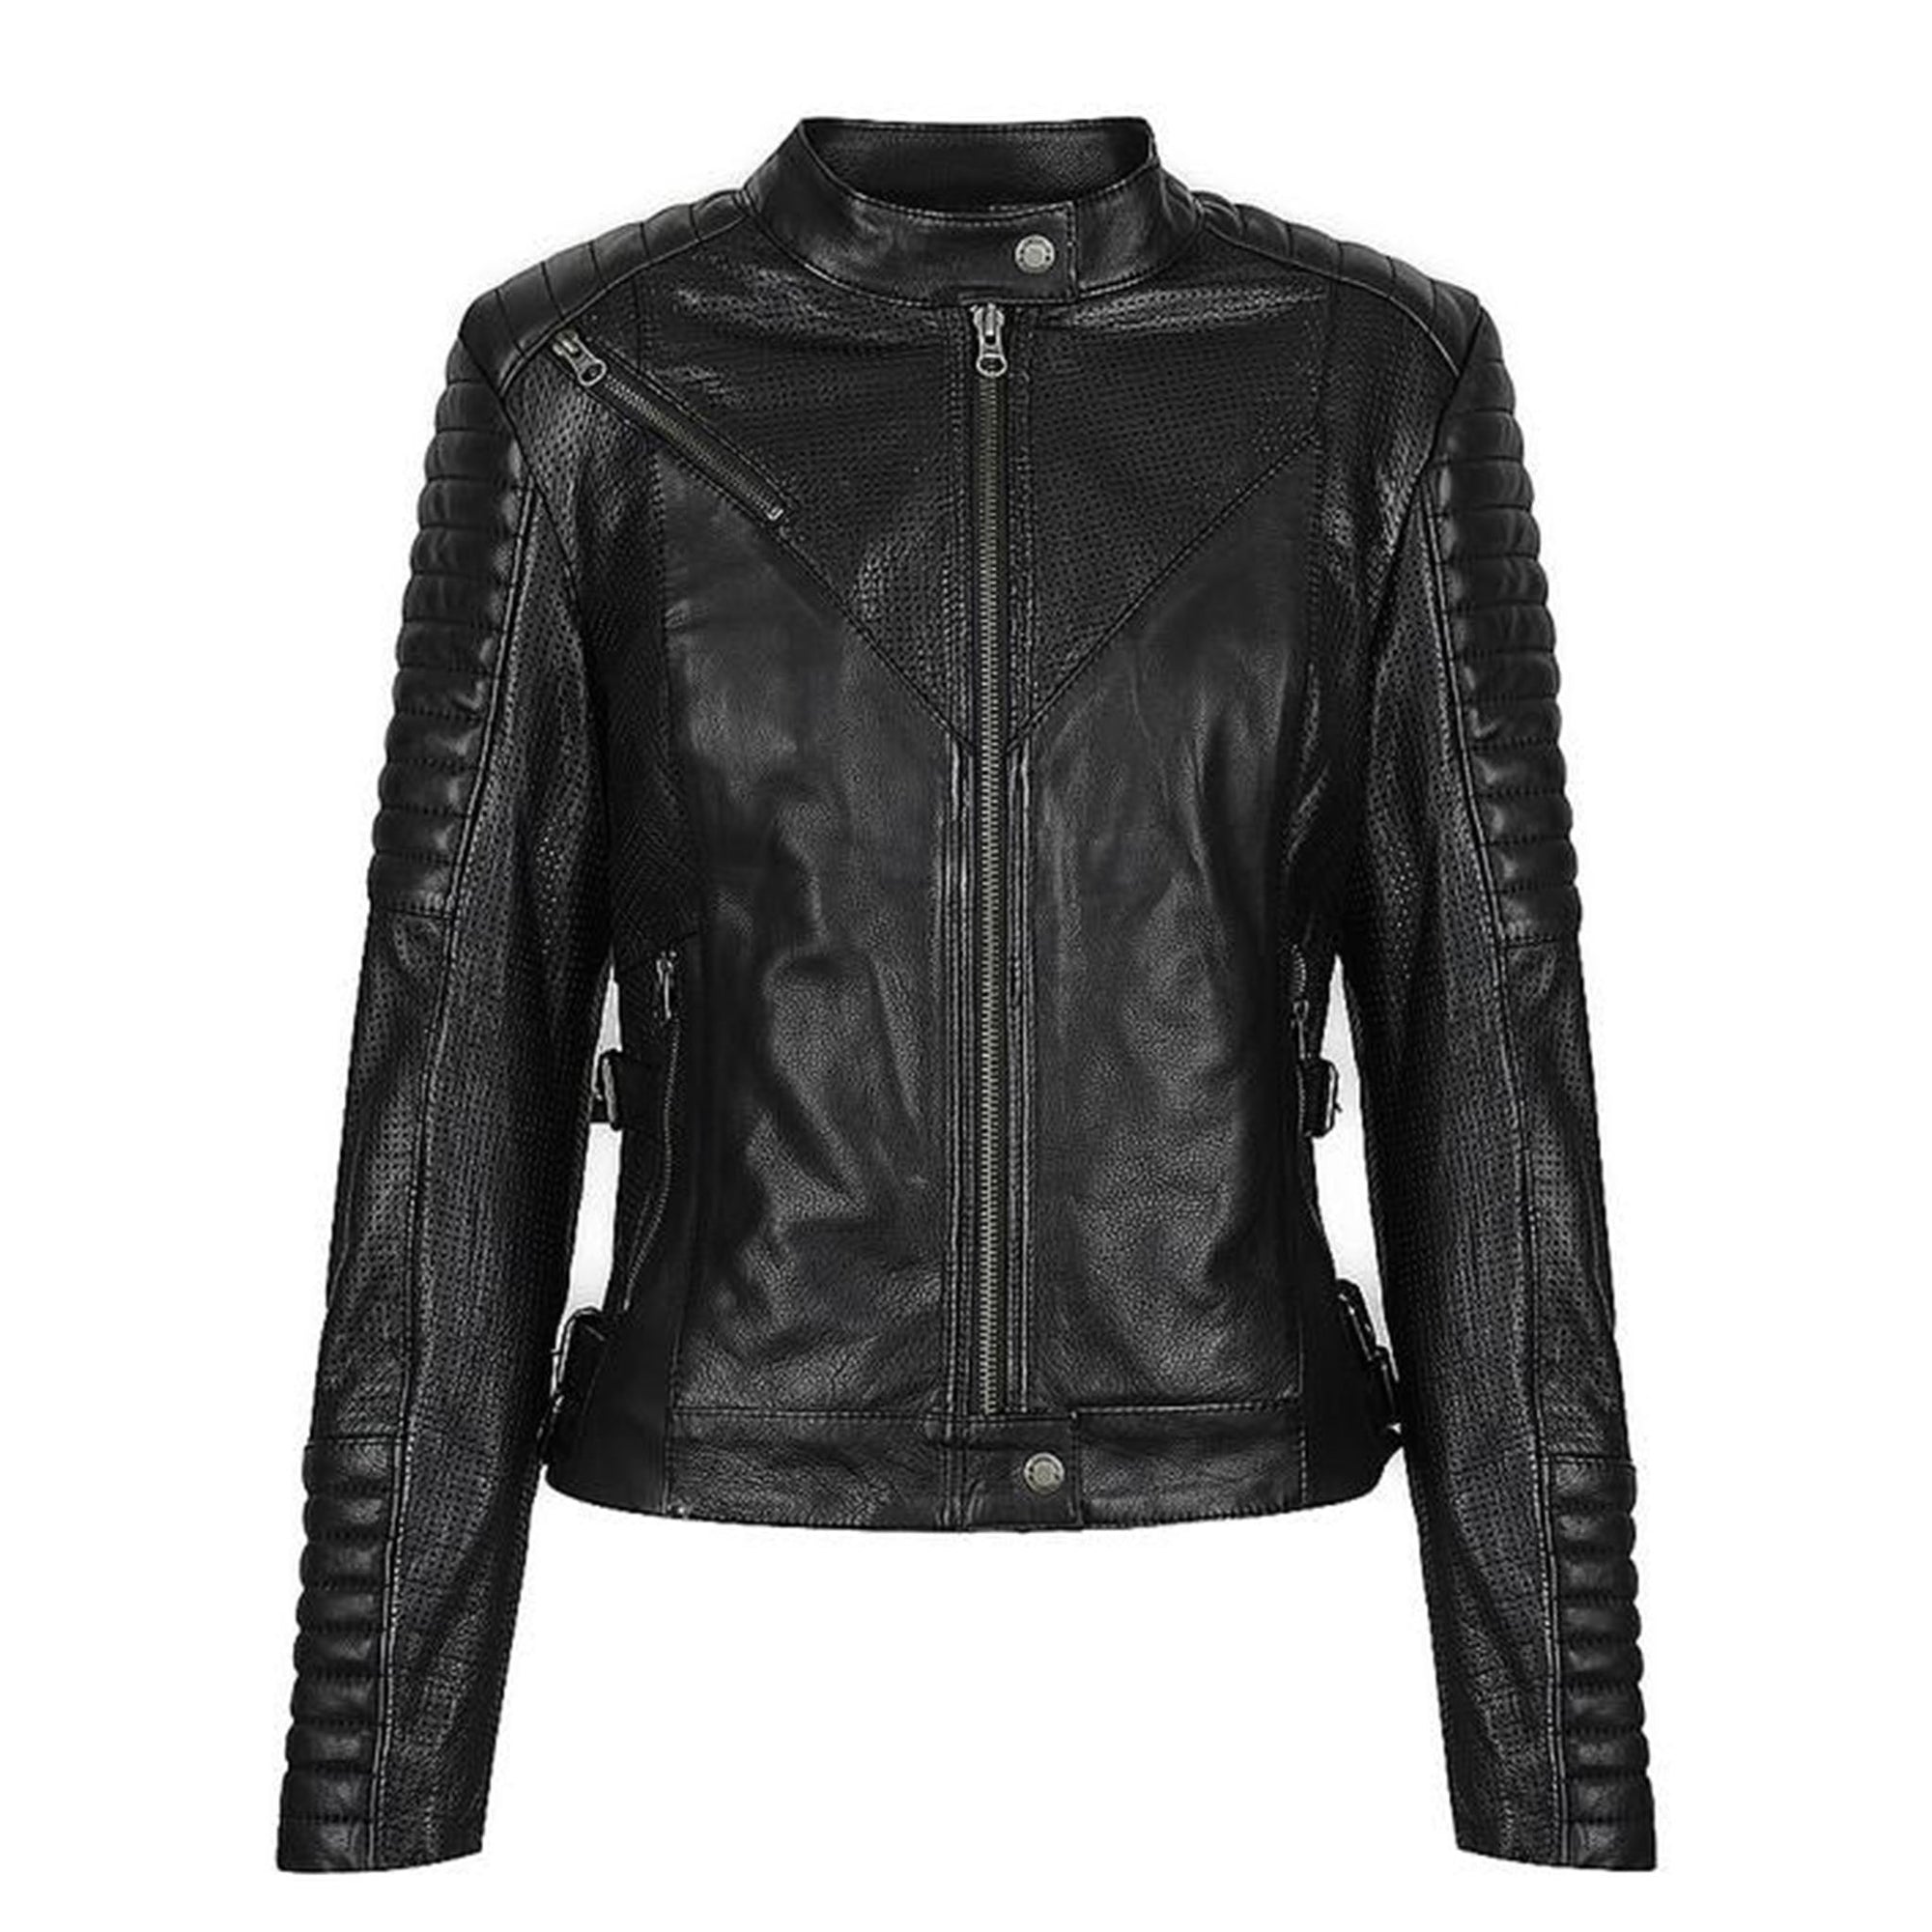 BGA Women's Brando Leather Motorcycle Jacket